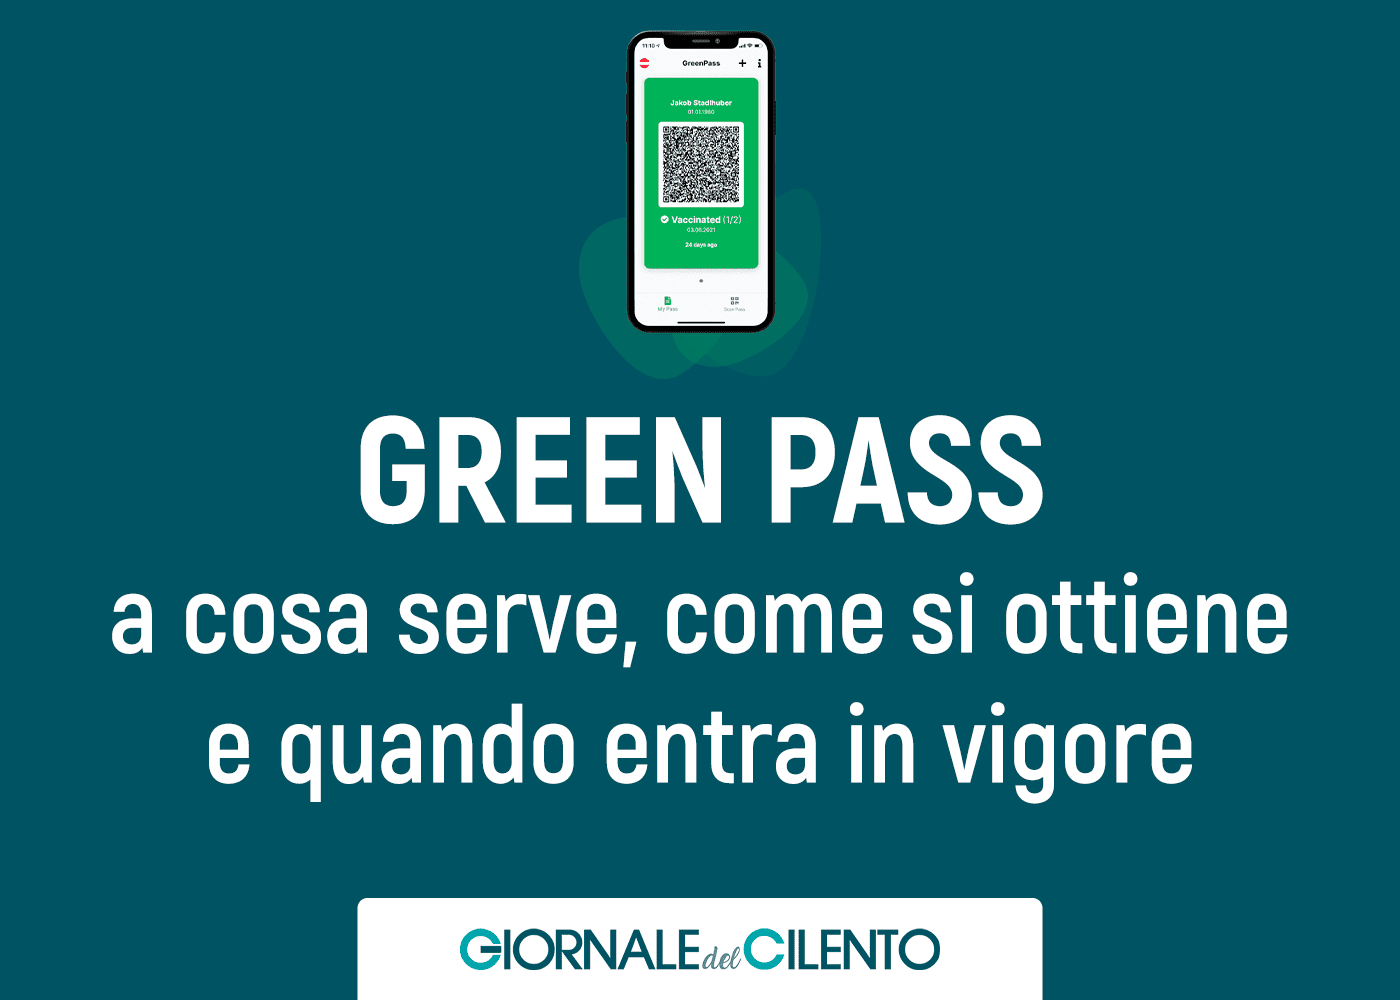 Green Pass: a cosa serve, come si ottiene e quando entra in vigore. La guida